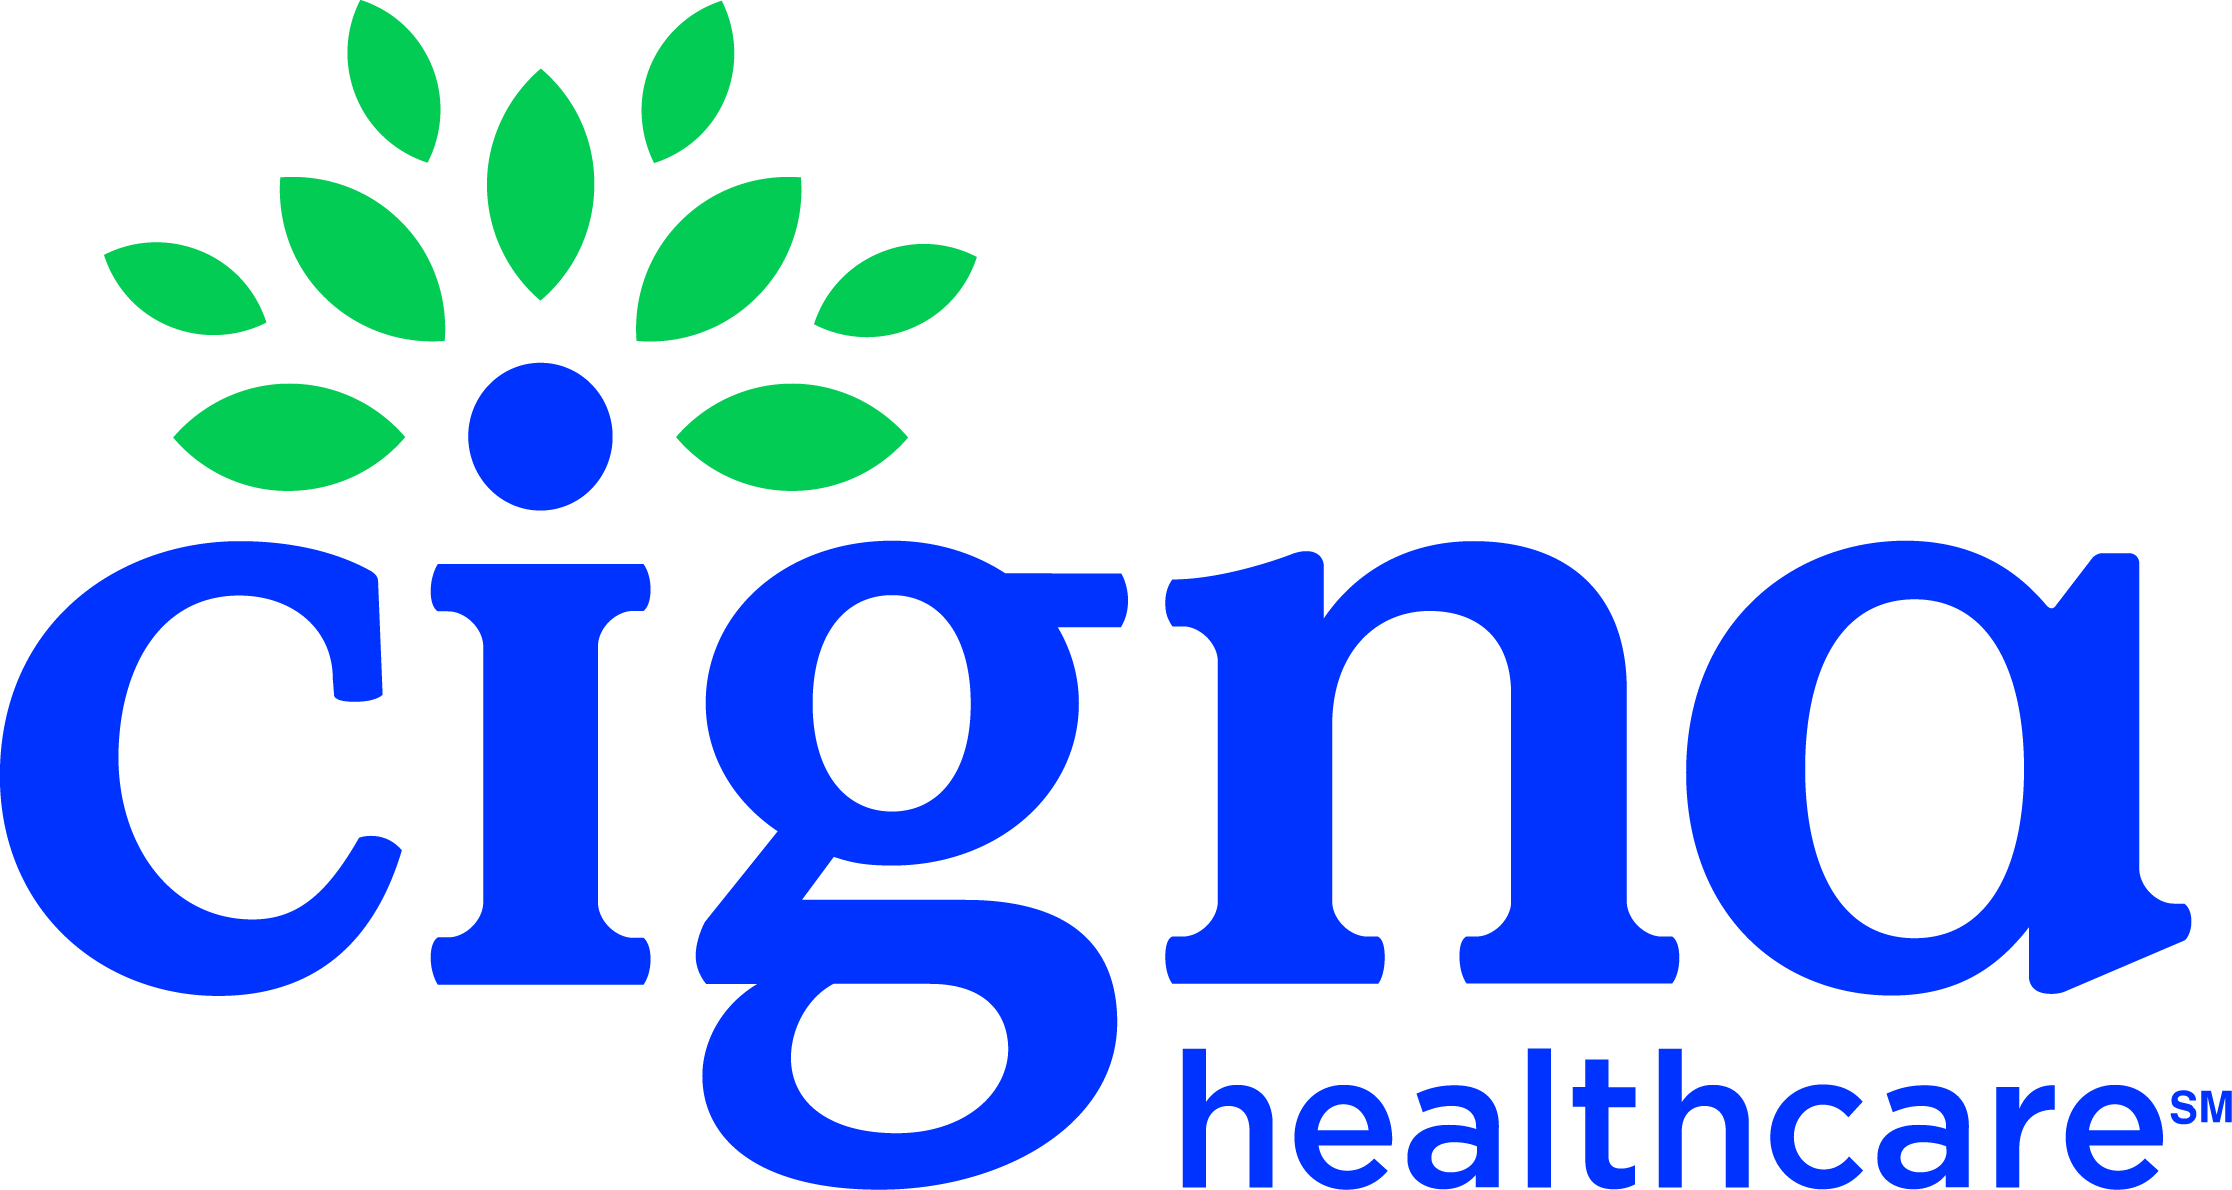 CIgna Healthcare